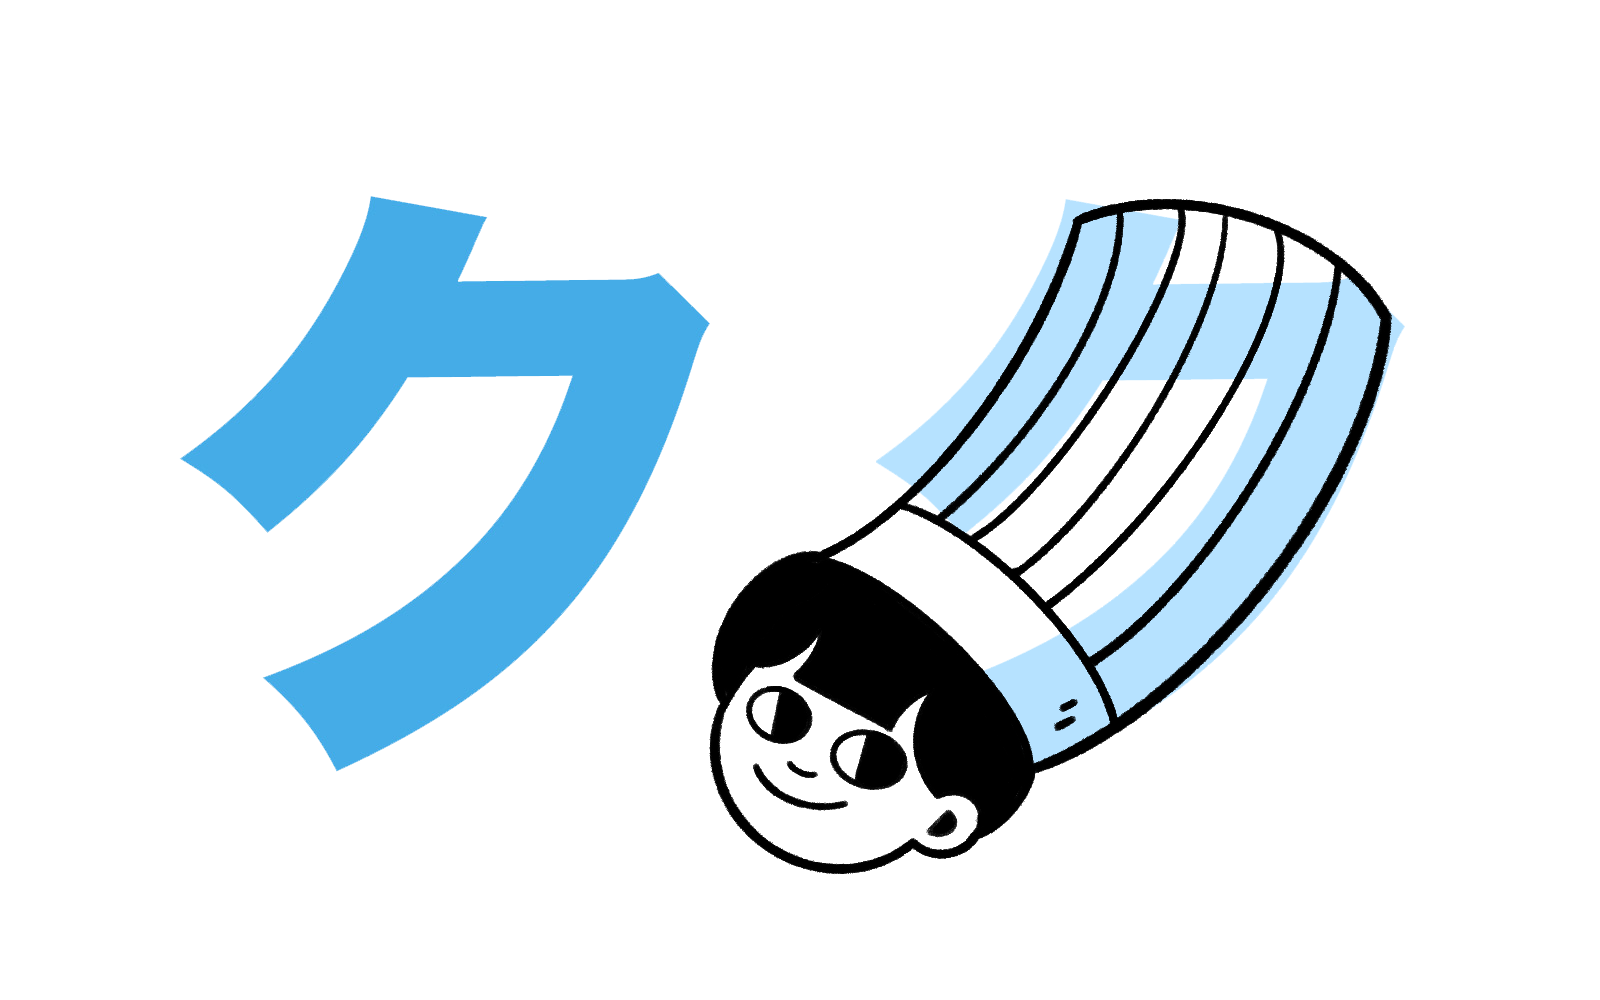 Katakana character ク mnemonic